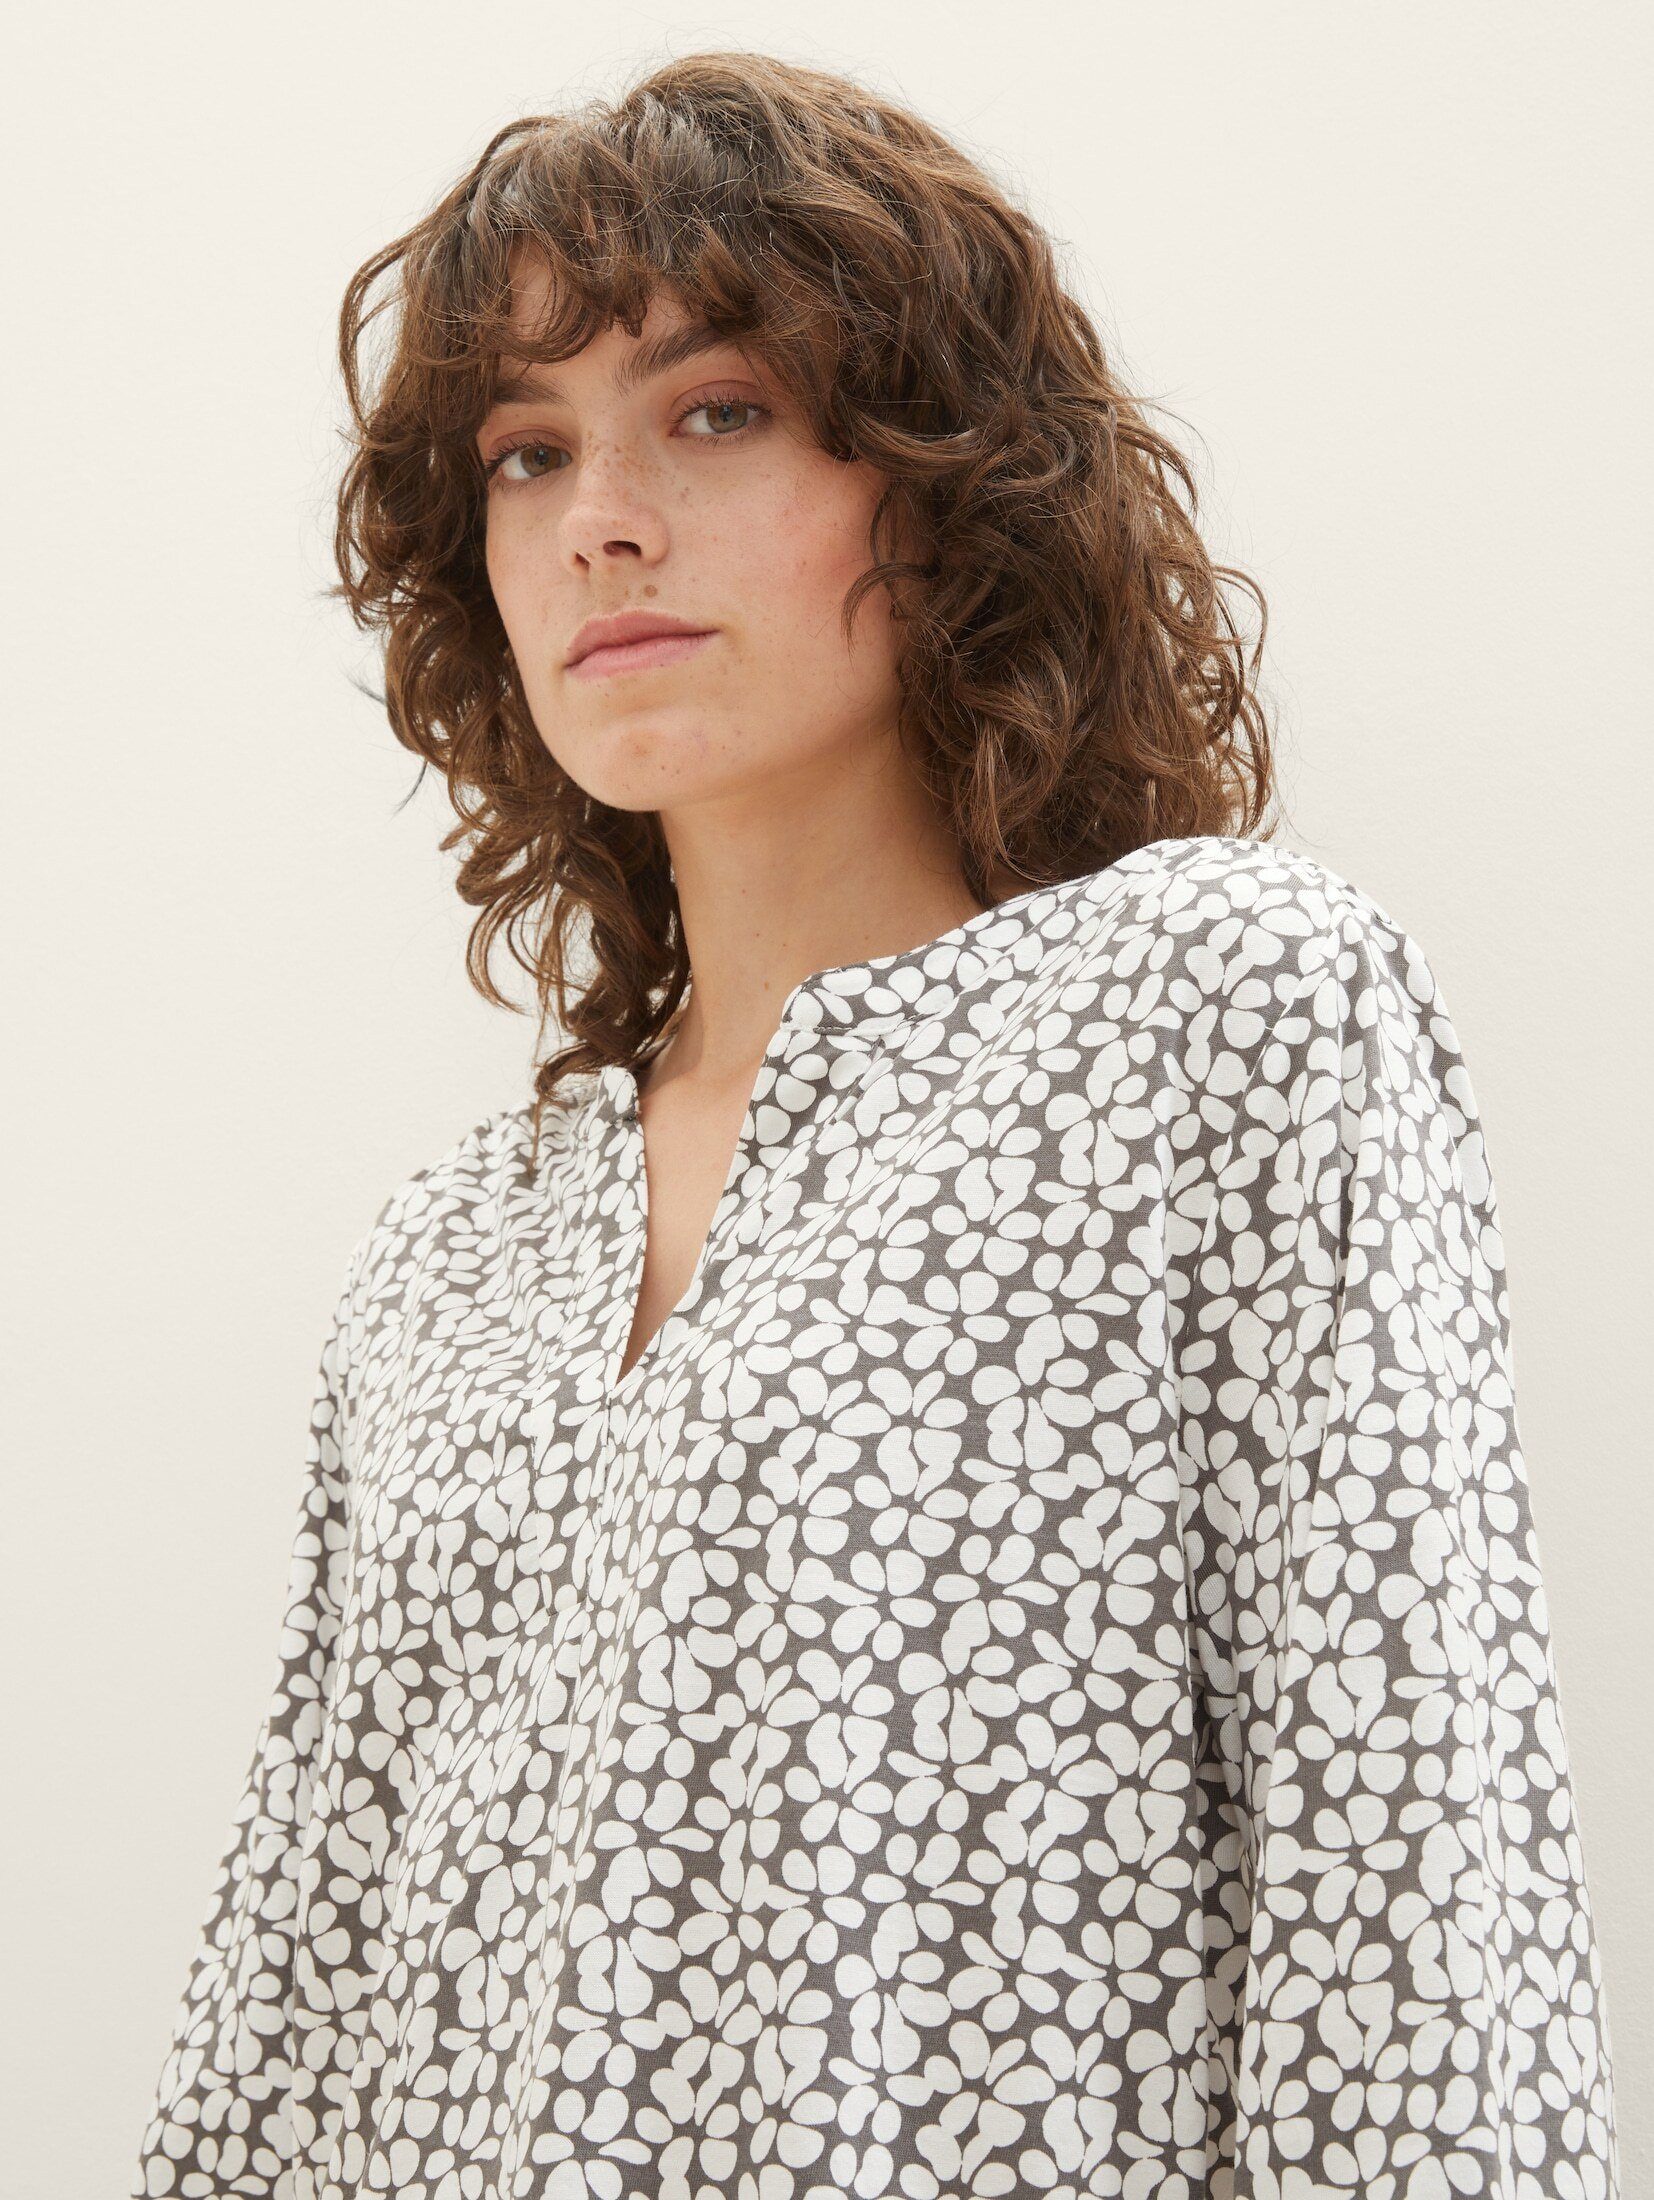 TOM TAILOR T-Shirt mit Bluse grey design floral Allover-Print